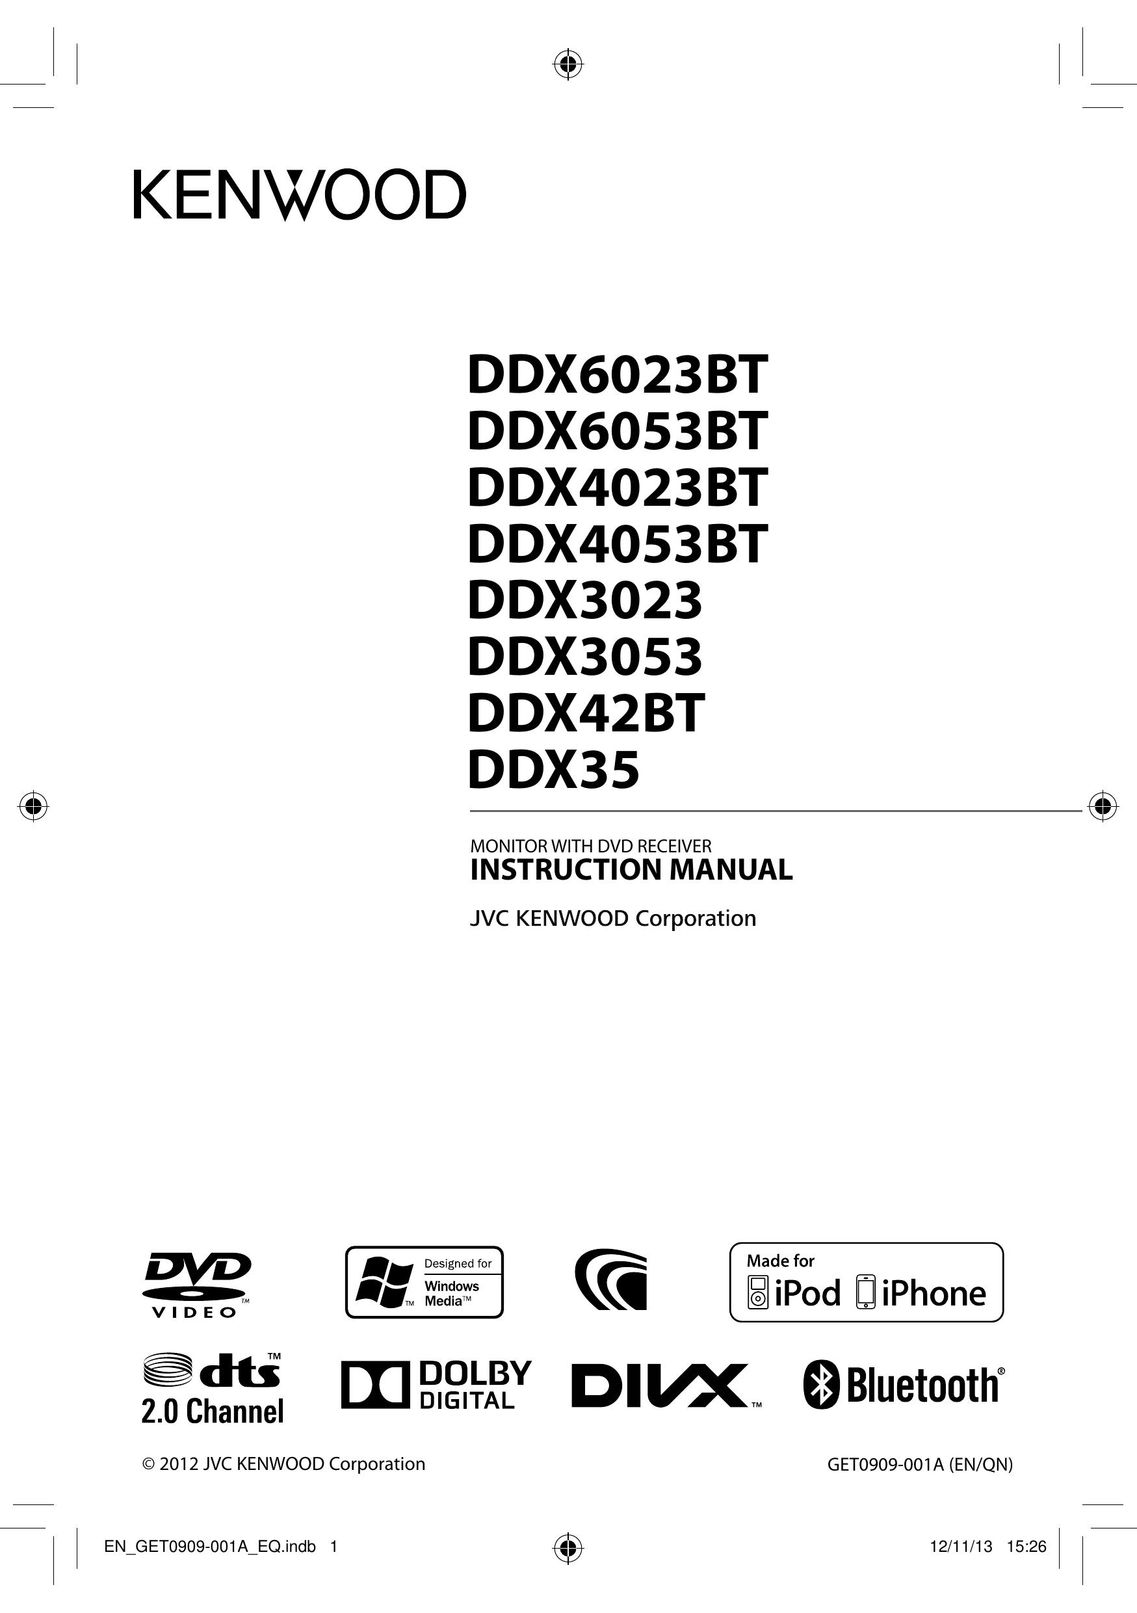 Kenwood DDX6053BT Car Video System User Manual